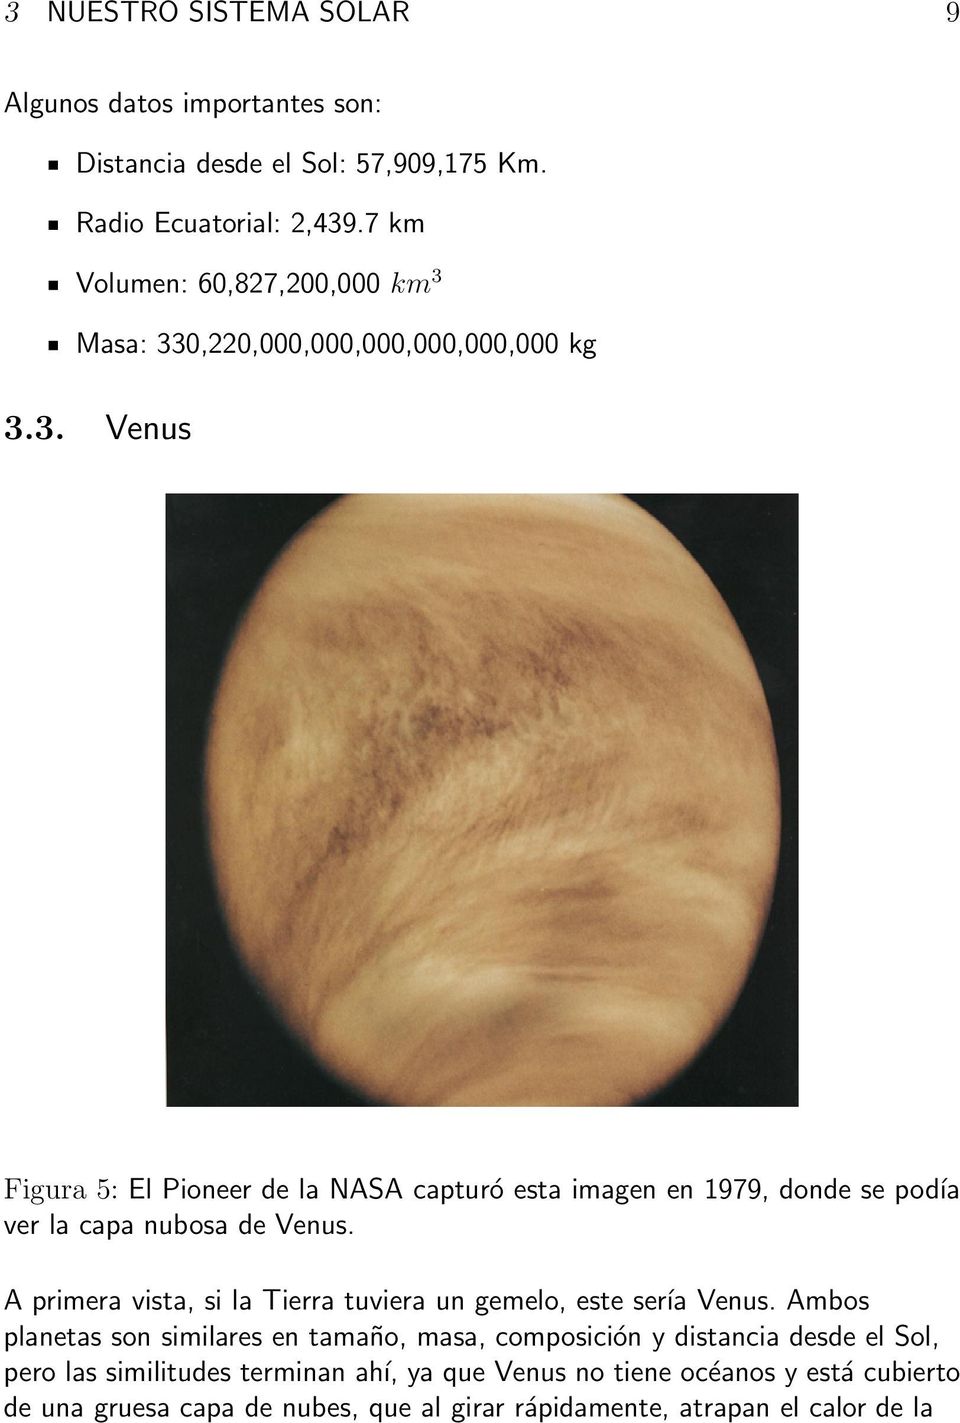 A primera vista, si la Tierra tuviera un gemelo, este sería Venus.